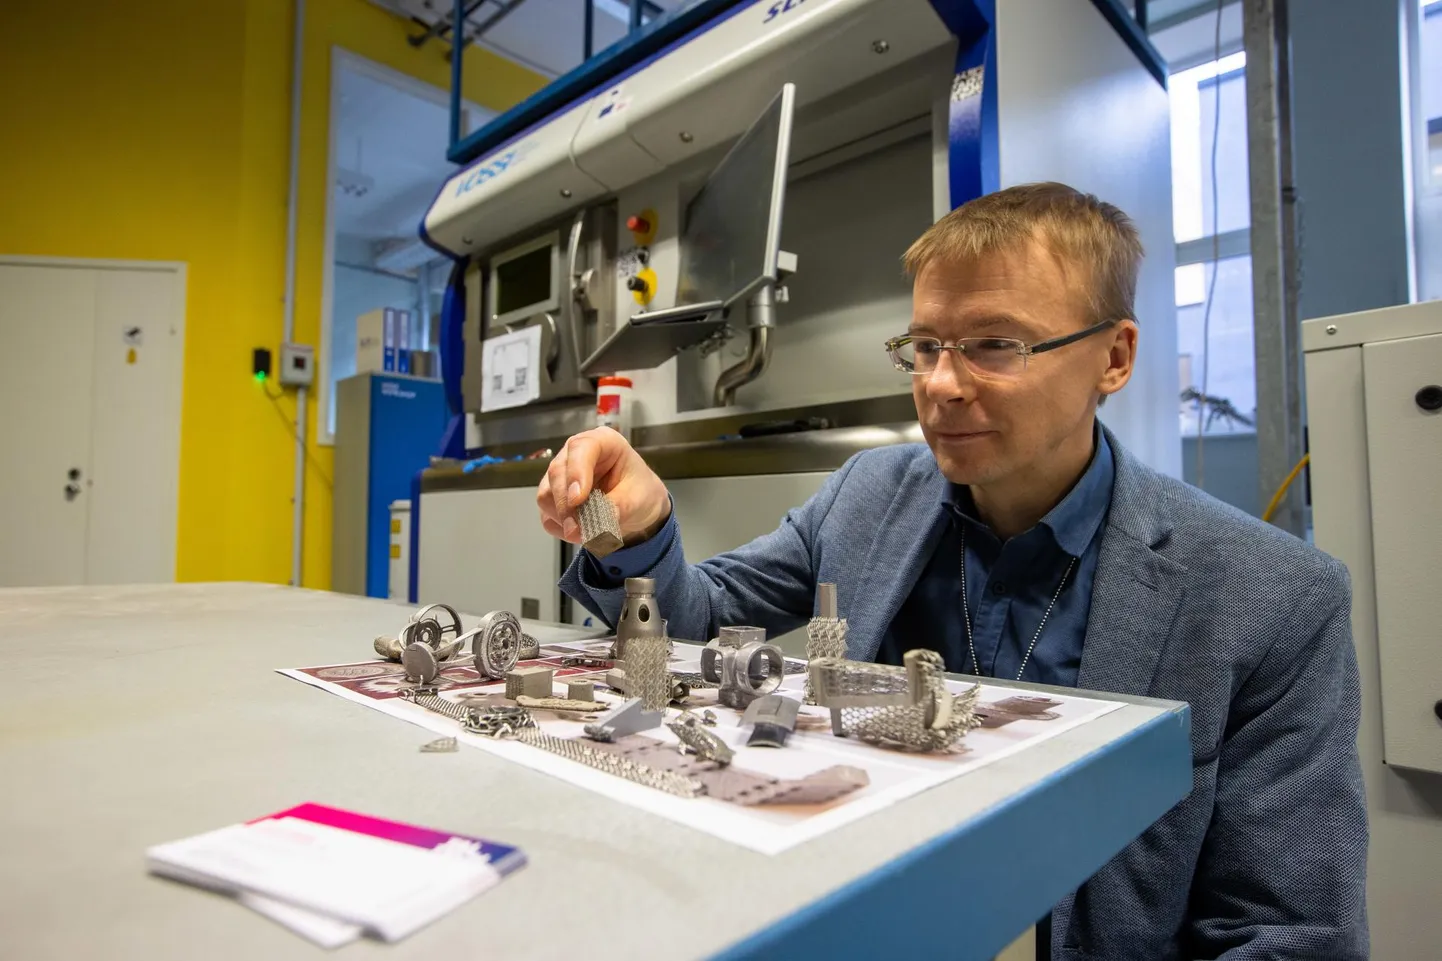 Tallinna Tehnikaülikooli mehaanika ja tööstustehnika instituudi direktor professor Kristo Karjust leiab ülikooli 3D-metalliprinterit tutvustades, et tootmise digitaliseerimine ja automatiseerimine peab olema väga põhjalikult läbi mõeldud. 